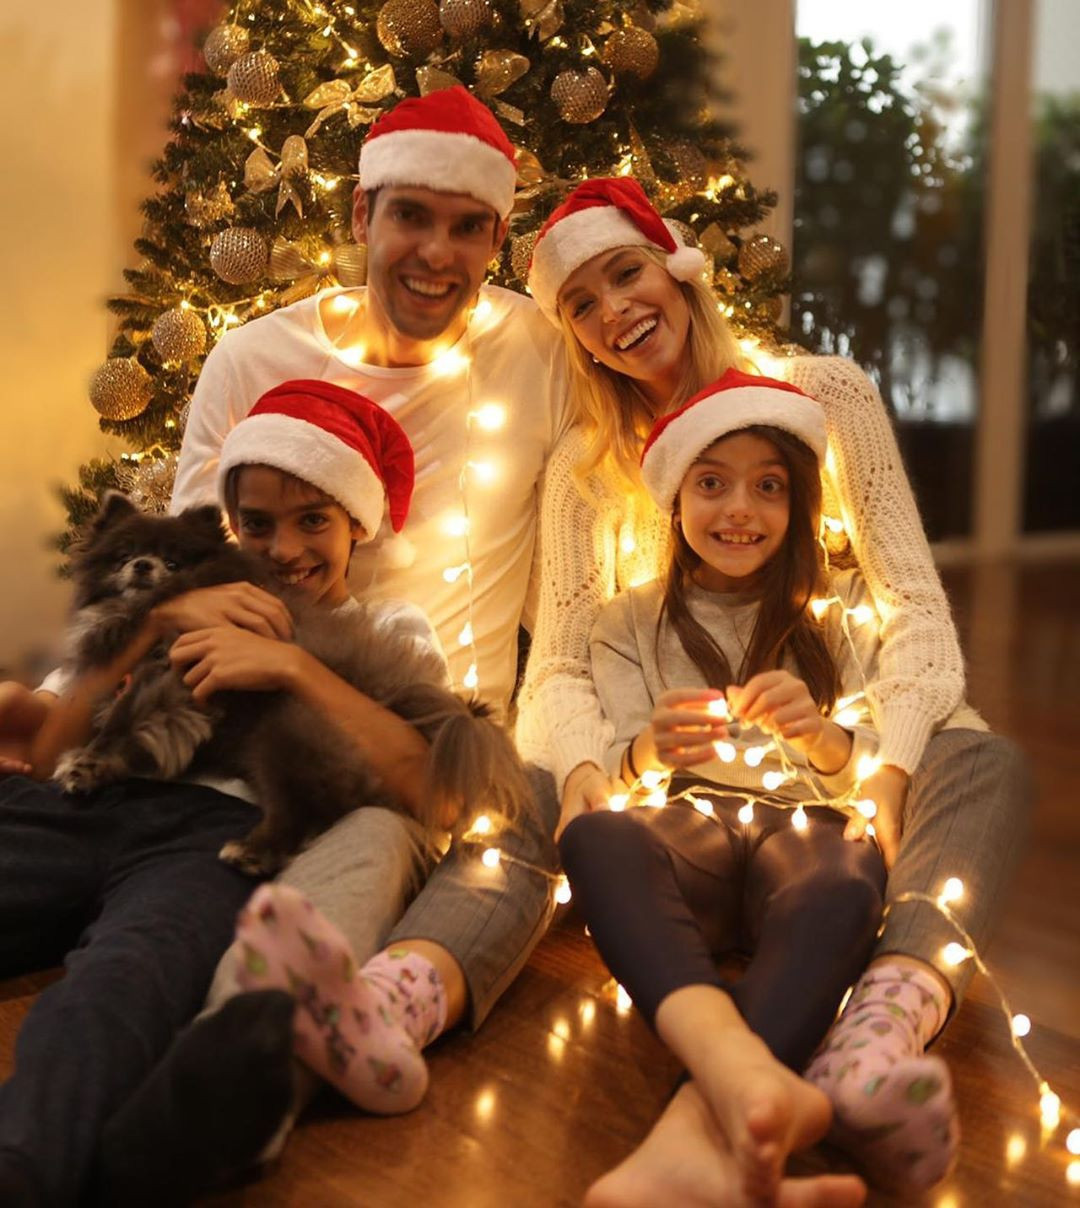 Noel là thời điểm để sum vầy bên gia đình và trao những món quà ý nghĩa. Để có thêm động lực chuẩn bị cho lễ hội sắp tới, hãy xem những bức ảnh Noel gia đình đầy thương yêu và niềm đam mê.